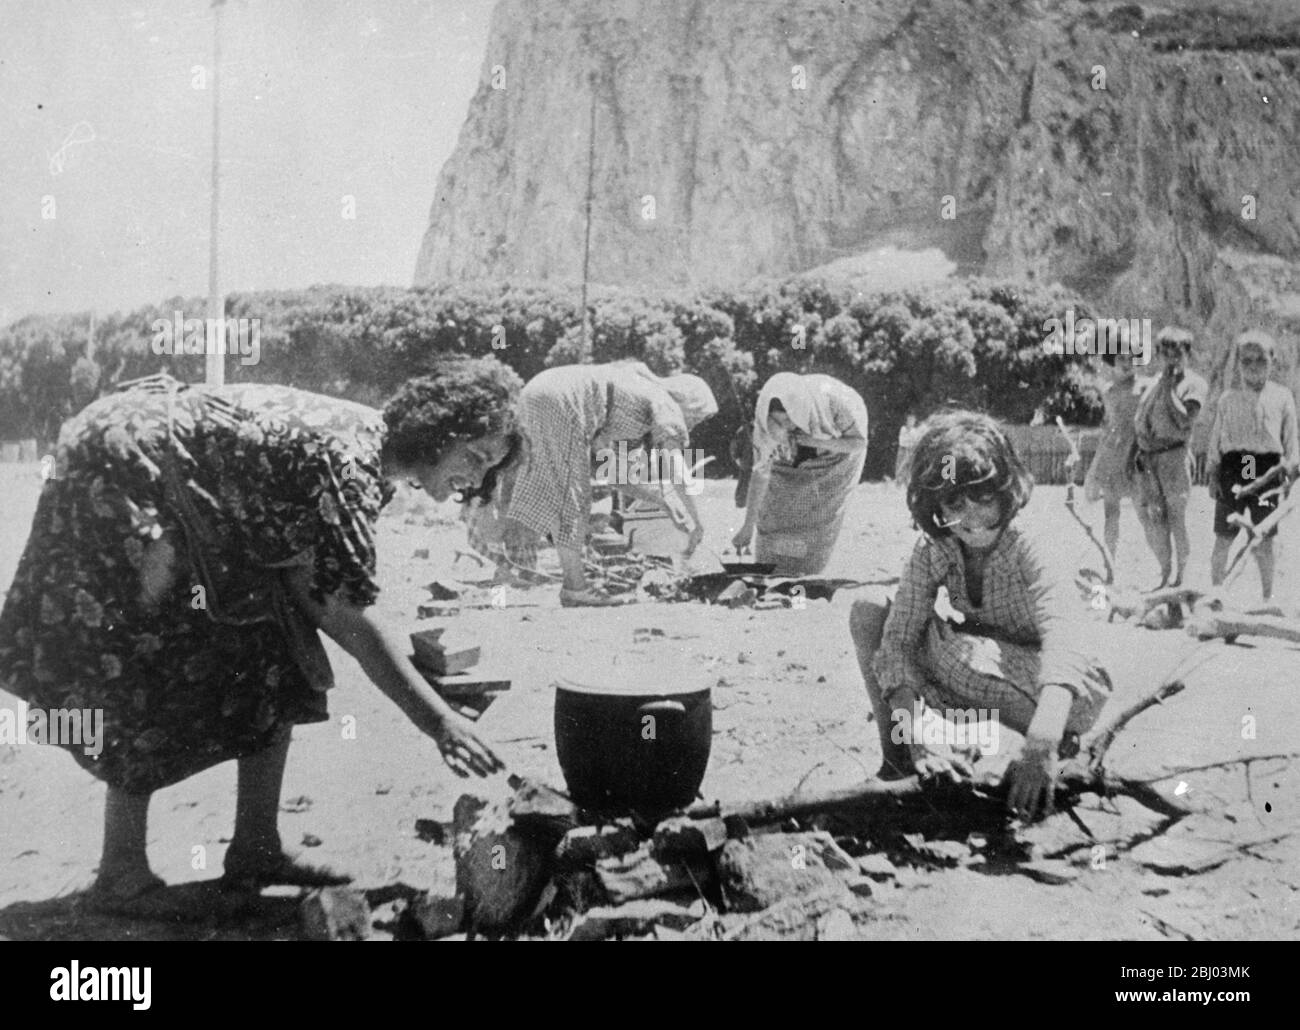 Spanische Flüchtlinge suchen Sicherheit in Gibraltar. - Diese Bilder, die gerade in London aufgenommen wurden, wurden in einem speziellen Lager in Gibraltar für die Flüchtlinge, die Sicherheit am Felsen aus den Schrecken des spanischen Bürgerkriegs gesucht gegründet. - Hunderte von spanischen und anderen Flüchtlingen, darunter viele Frauen und Kinder, flohen über die Grenze nach Gibraltar. - Fotoausstellungen: Spanische Flüchtlinge bereiten Essen im Lager Gibraltar vor. - 29. Juli 1936 Stockfoto